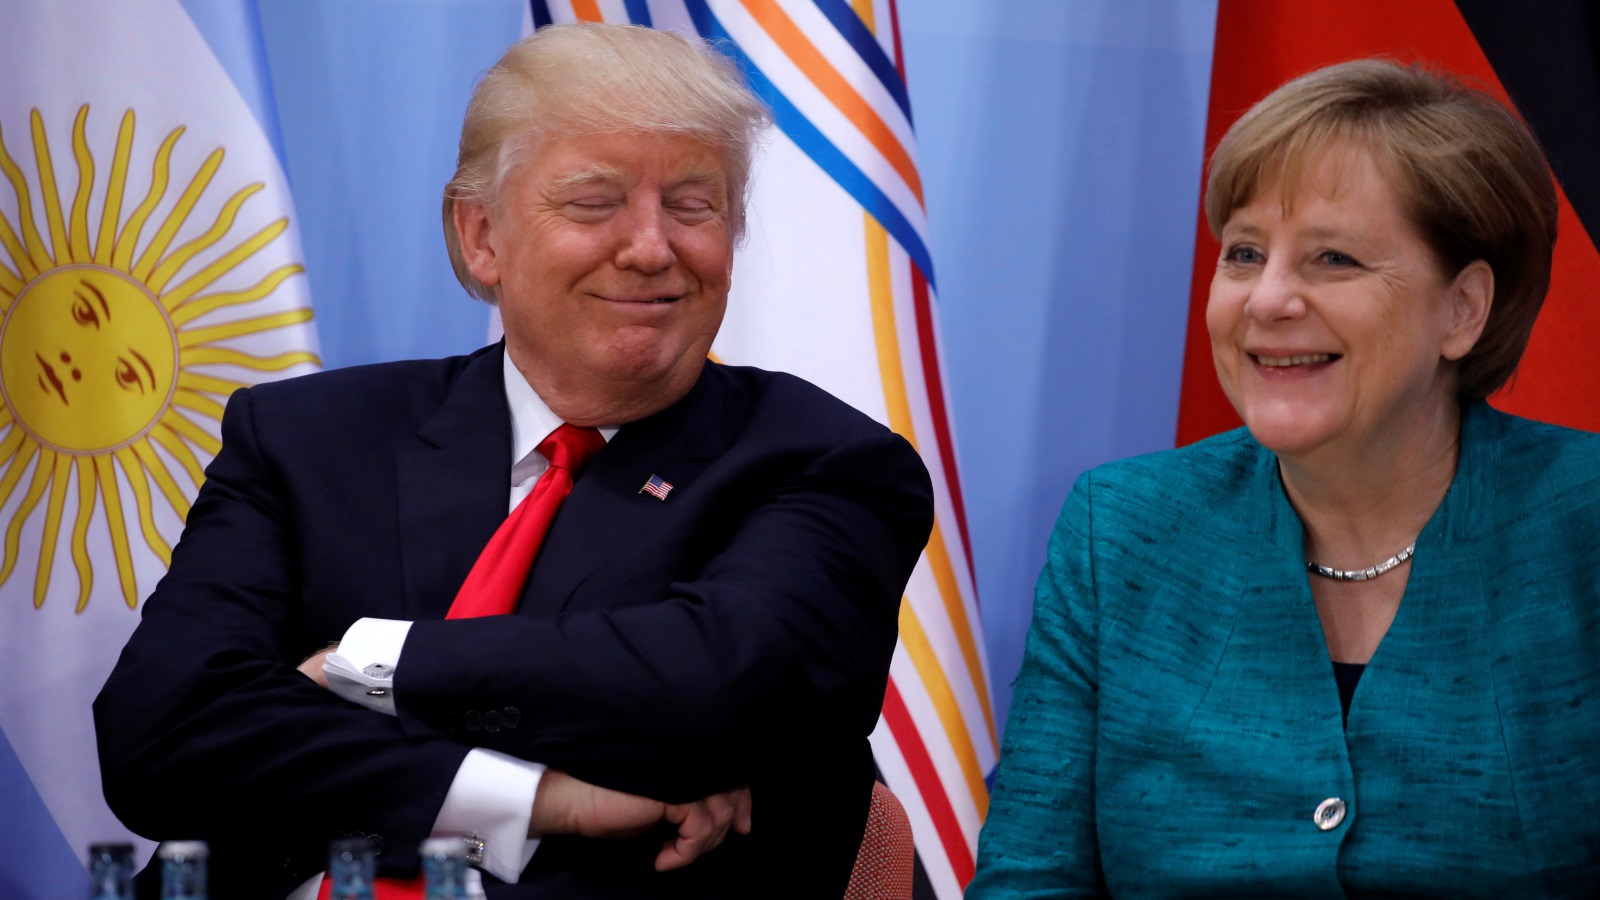 يثق 11% فقط من الألمان في قيام الرئيس -الأميركي- بالإجراءات الصحيحة فيما يتعلق بالشؤون العالمية. ولذلك ليس من المستغرب أن ميركل كانت تحدد بشكل استباقي نوع العلاقة التي تود بلدها أن تقيمها مع الولايات المتحدة. إذ أرسلت مذكرة تهنئة لترمب تحث فيها على التعاون القائم على القيم المشتركة (رويترز)